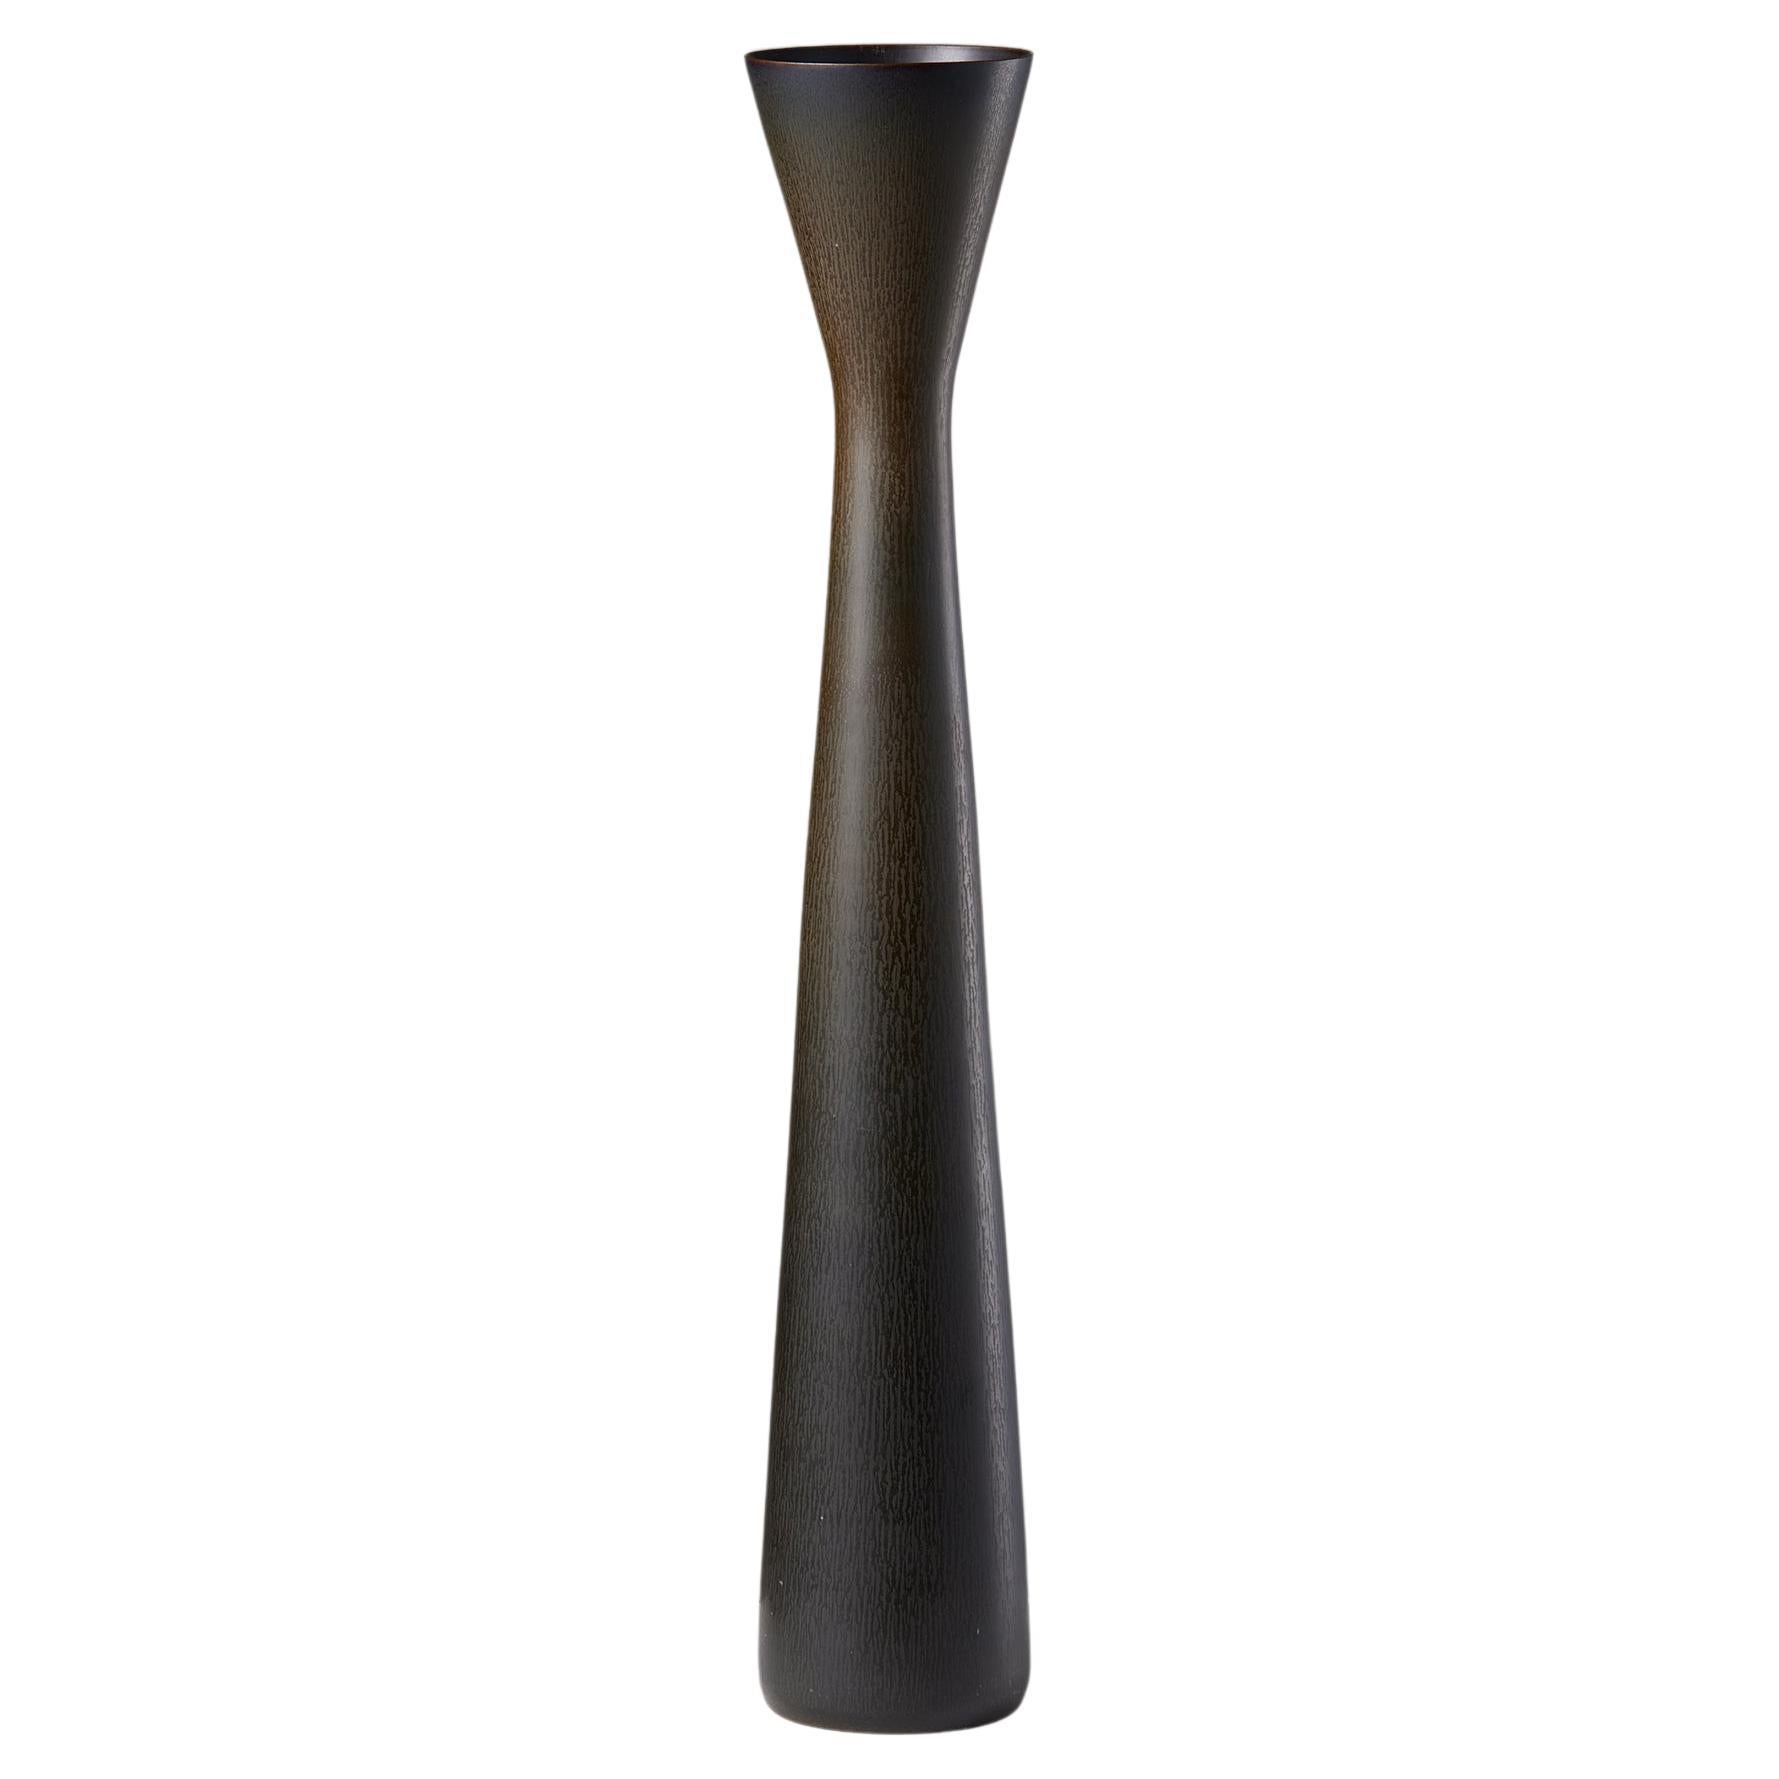 Vase conçu par Carl-Harry Stålhane pour Rörstrand, Suède, 1957